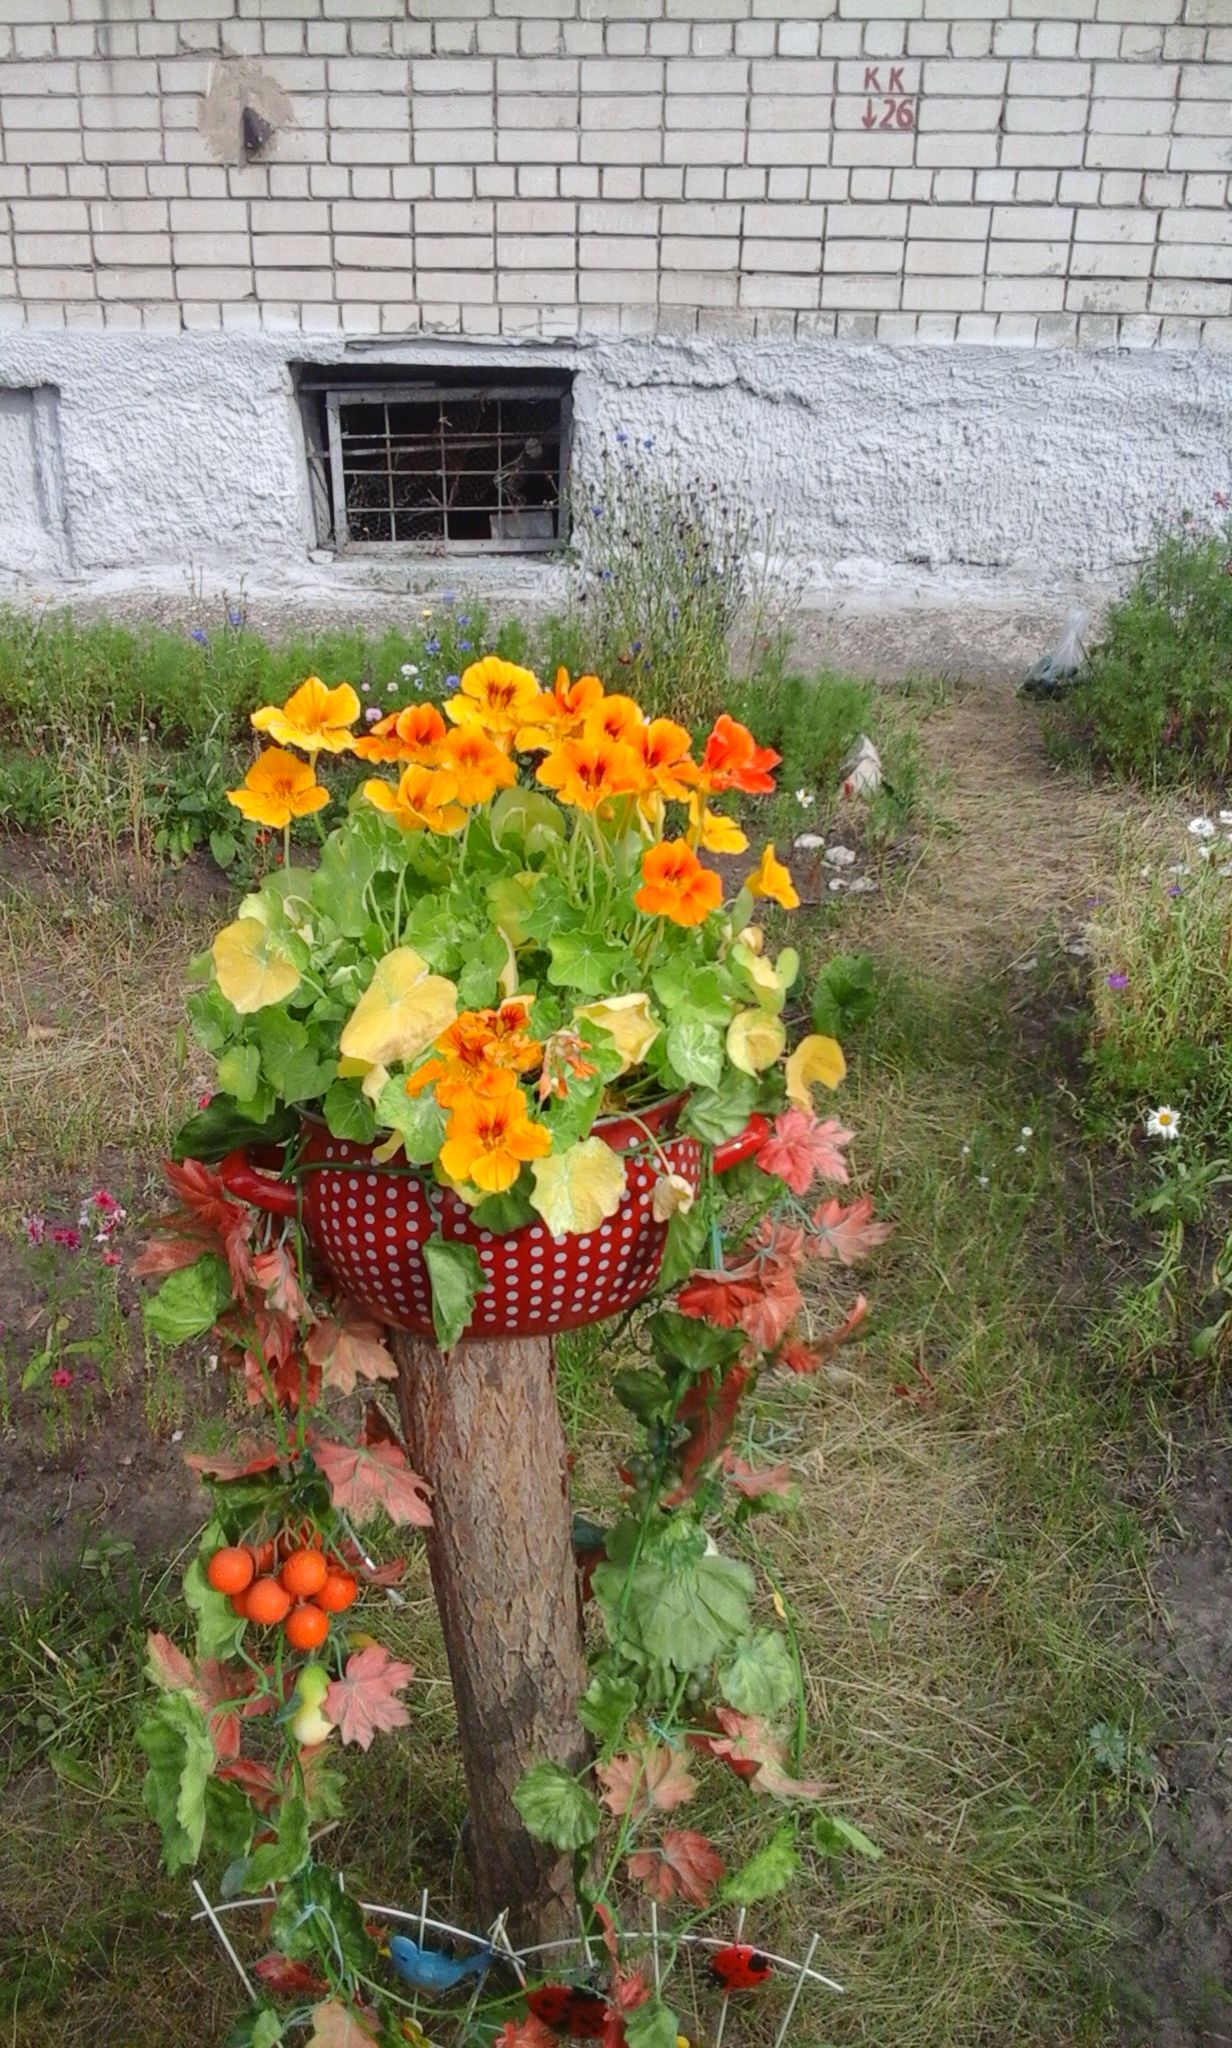 К конкурсу «Мой миллион цветов» присоединился дом №6 по улице Комарова